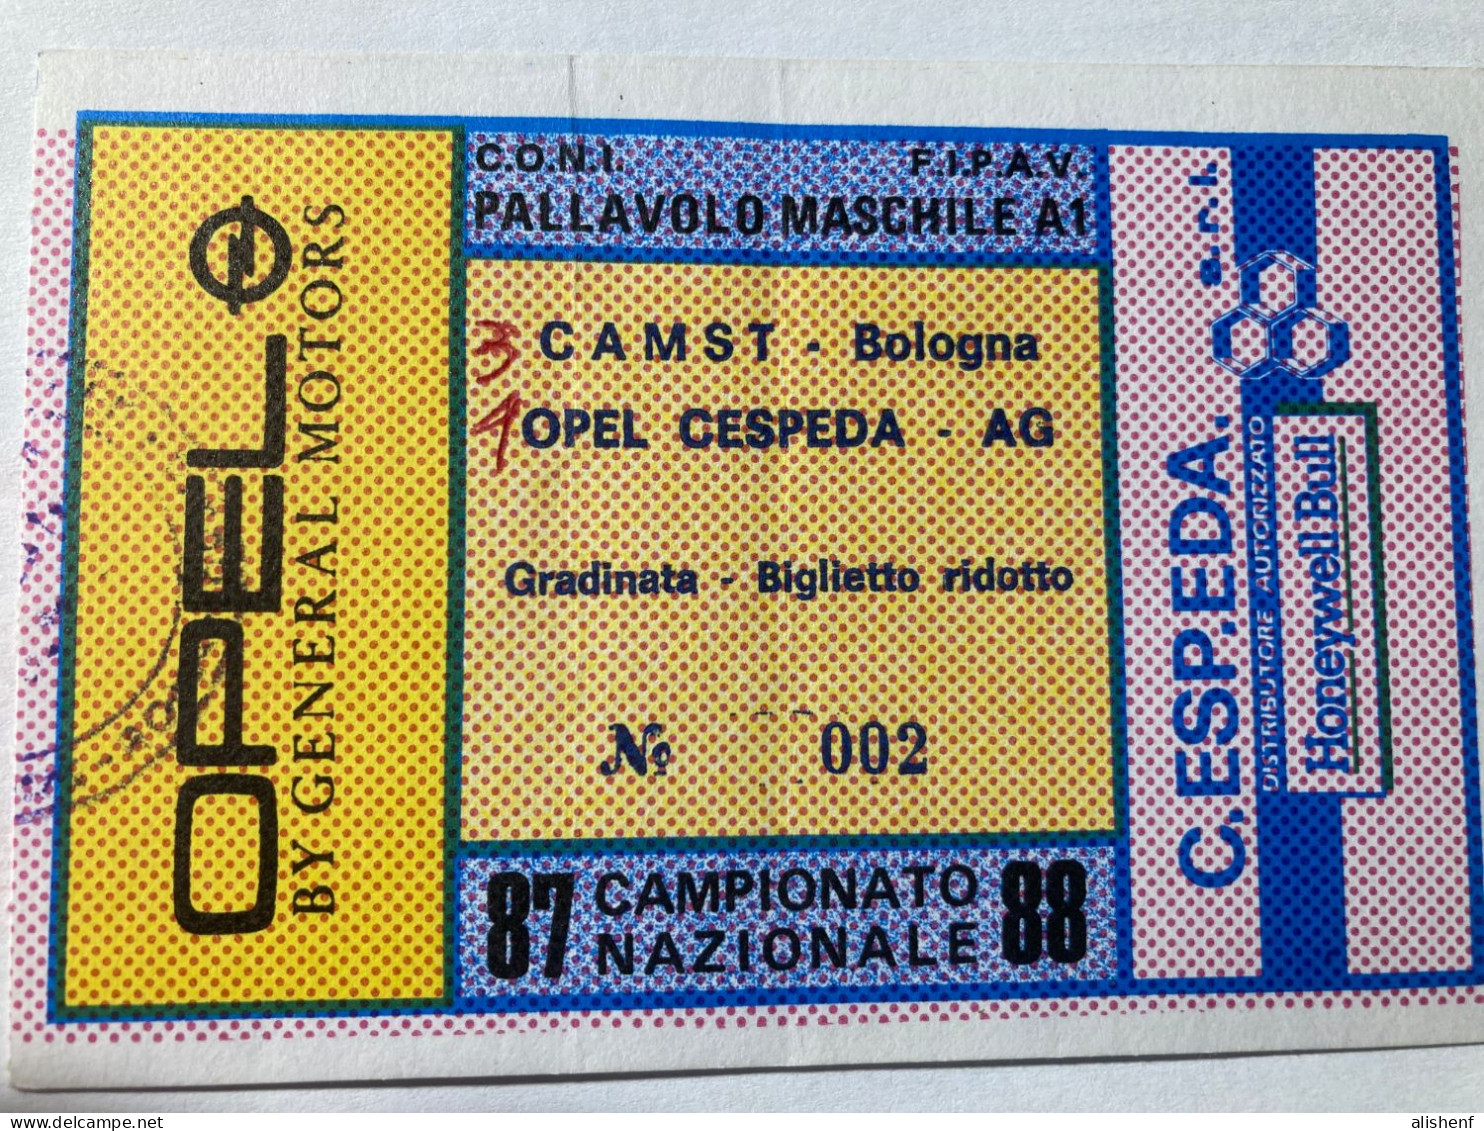 Biglietto Pallavolo Maschile A1 Opel Cespeda Agrigento CAMST Bologna Campionato 1987-88 - Tickets - Entradas